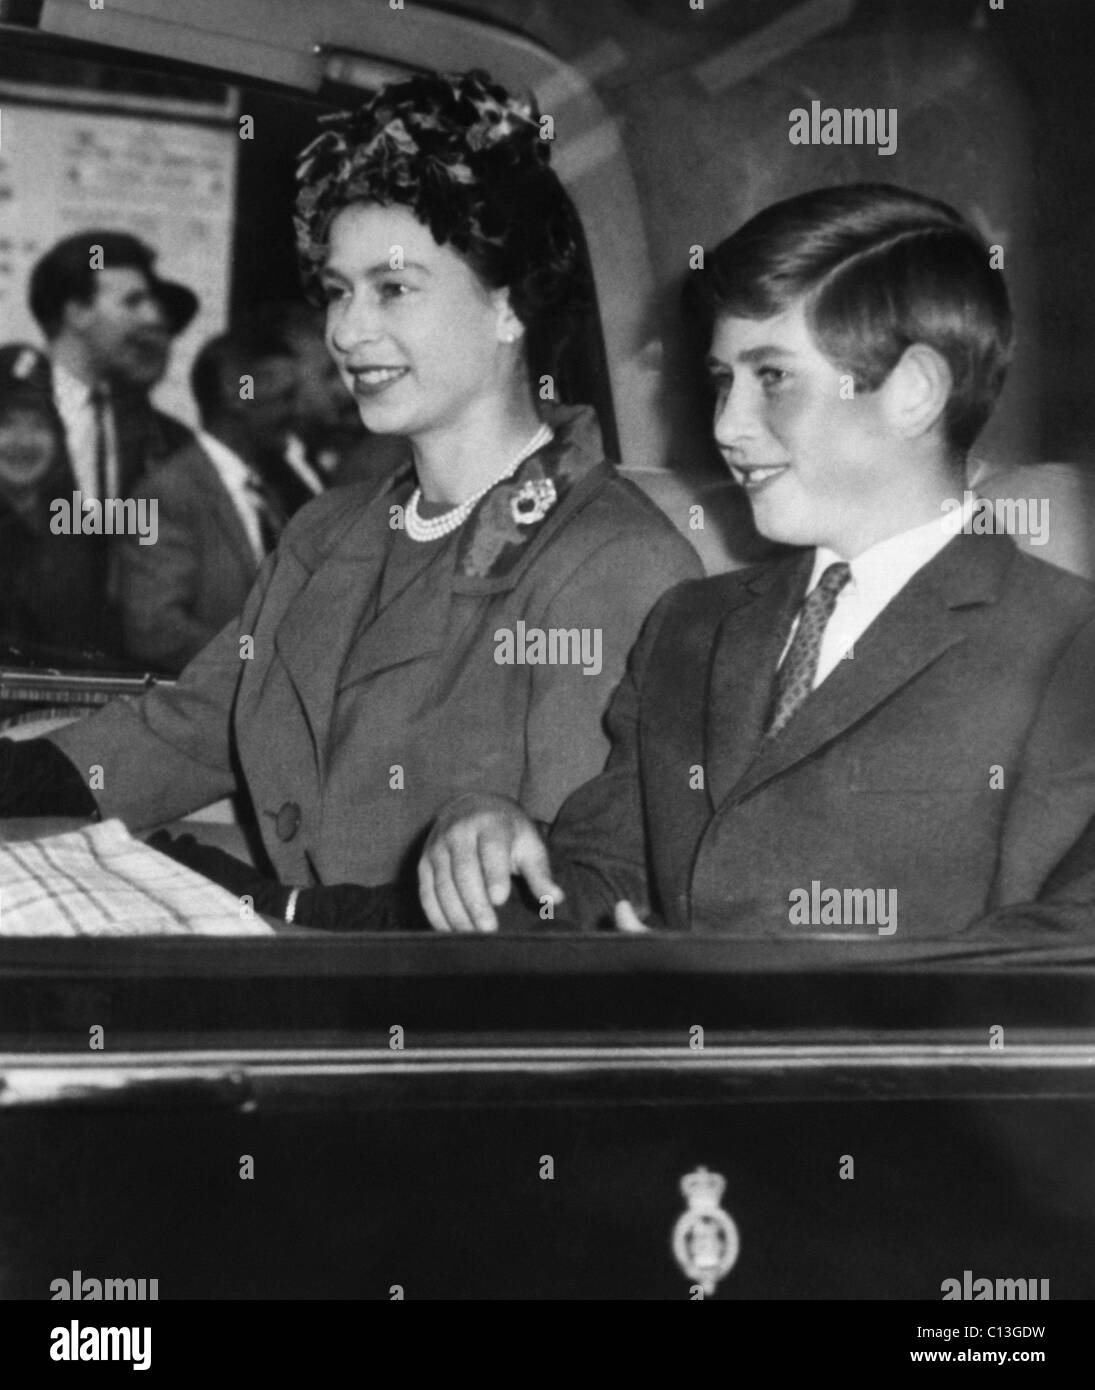 La famille royale britannique. La reine Elizabeth II d'Angleterre et le Prince Charles de Galles, au début des années 60. Banque D'Images